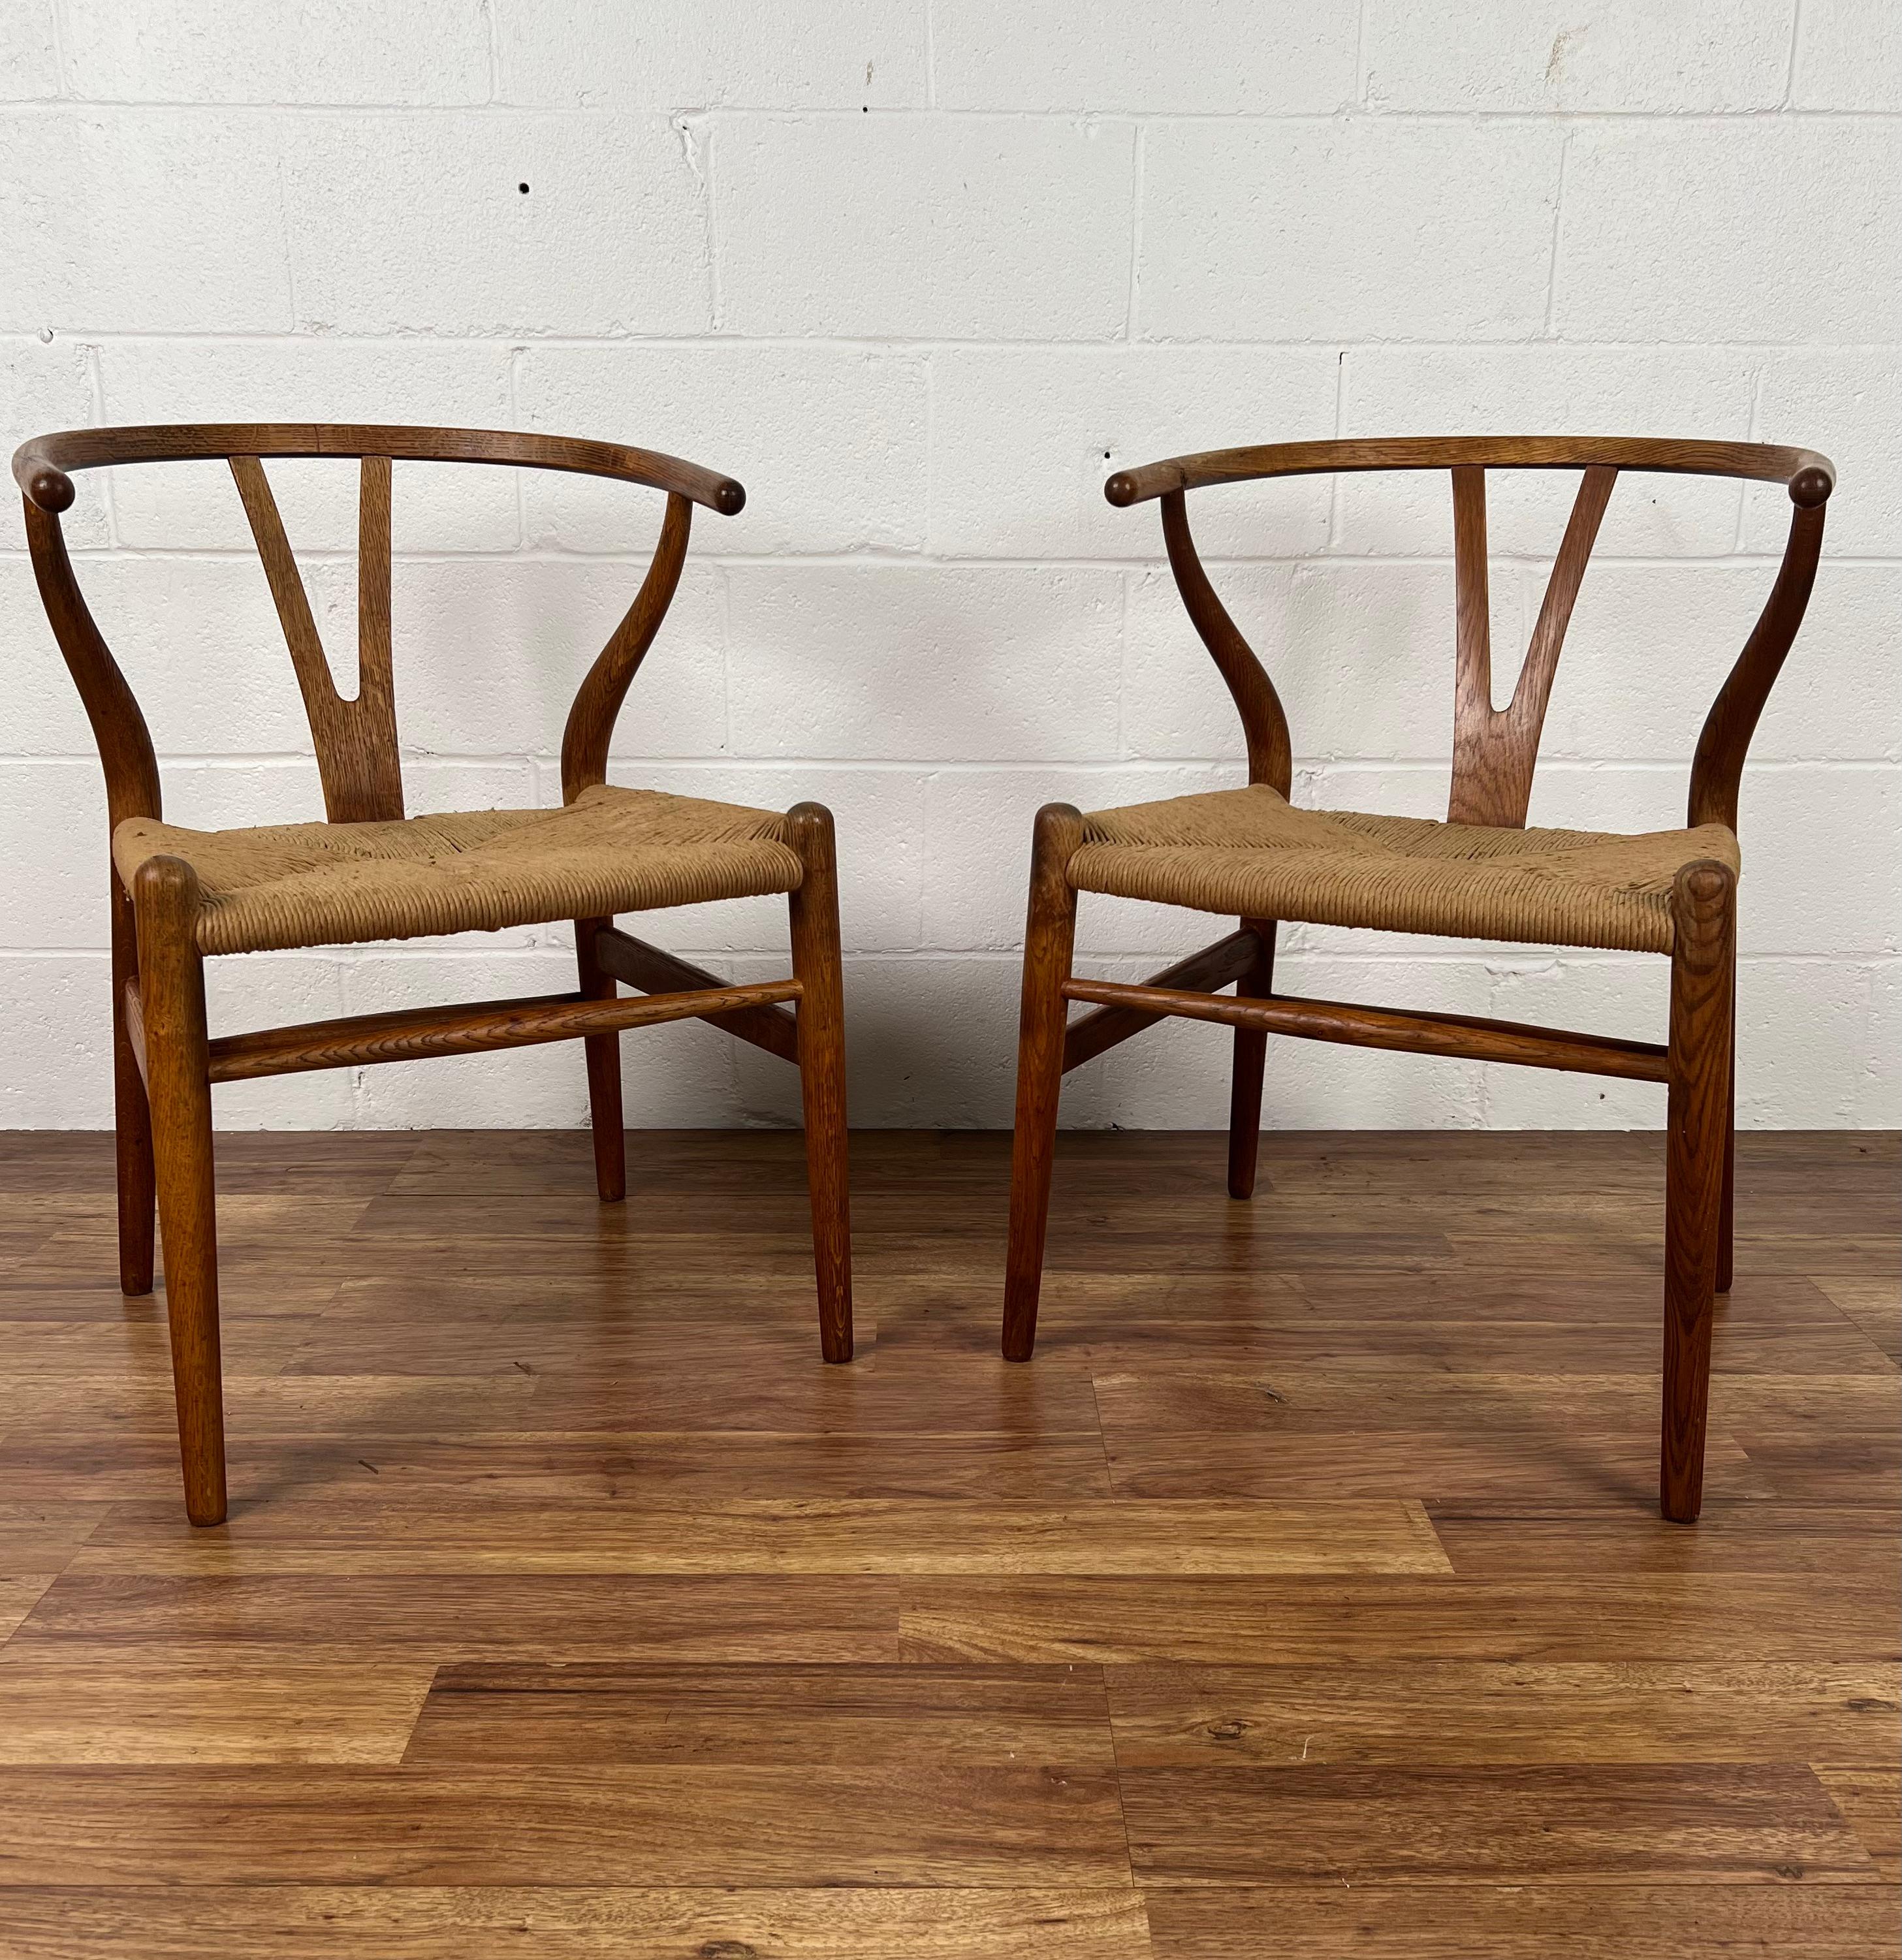 Wir bieten Ihnen dieses seltene und frühe originale Paar von Hans J. Wegners ikonischen CH24 Querlenker-Stühlen an. Diese sind die beliebtesten aller schönen Stücke dieses legendären Designers. Dieses schöne Paar wurde von den geschickten